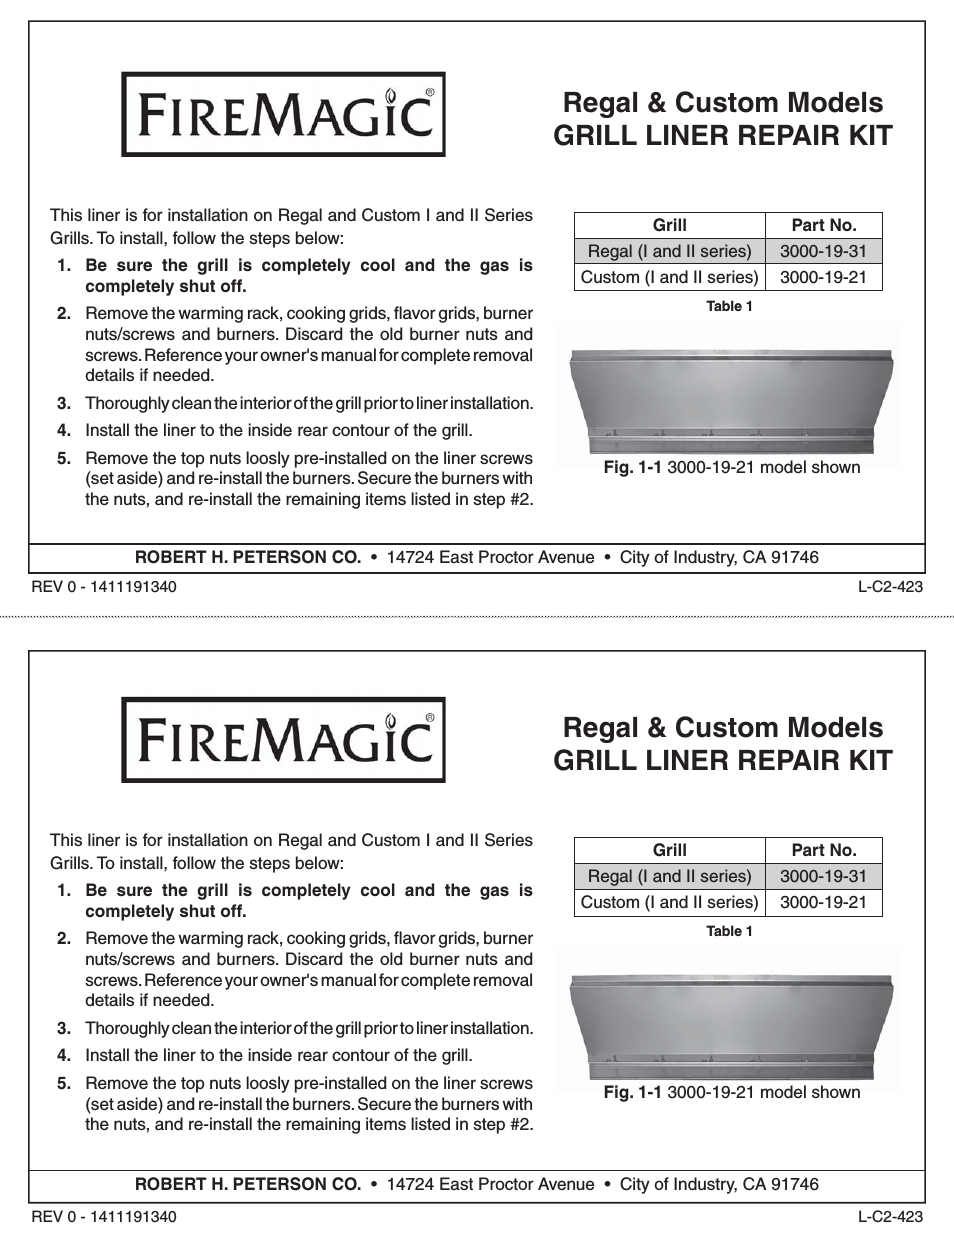 Regal and Custom Grill Liner Repair Kit